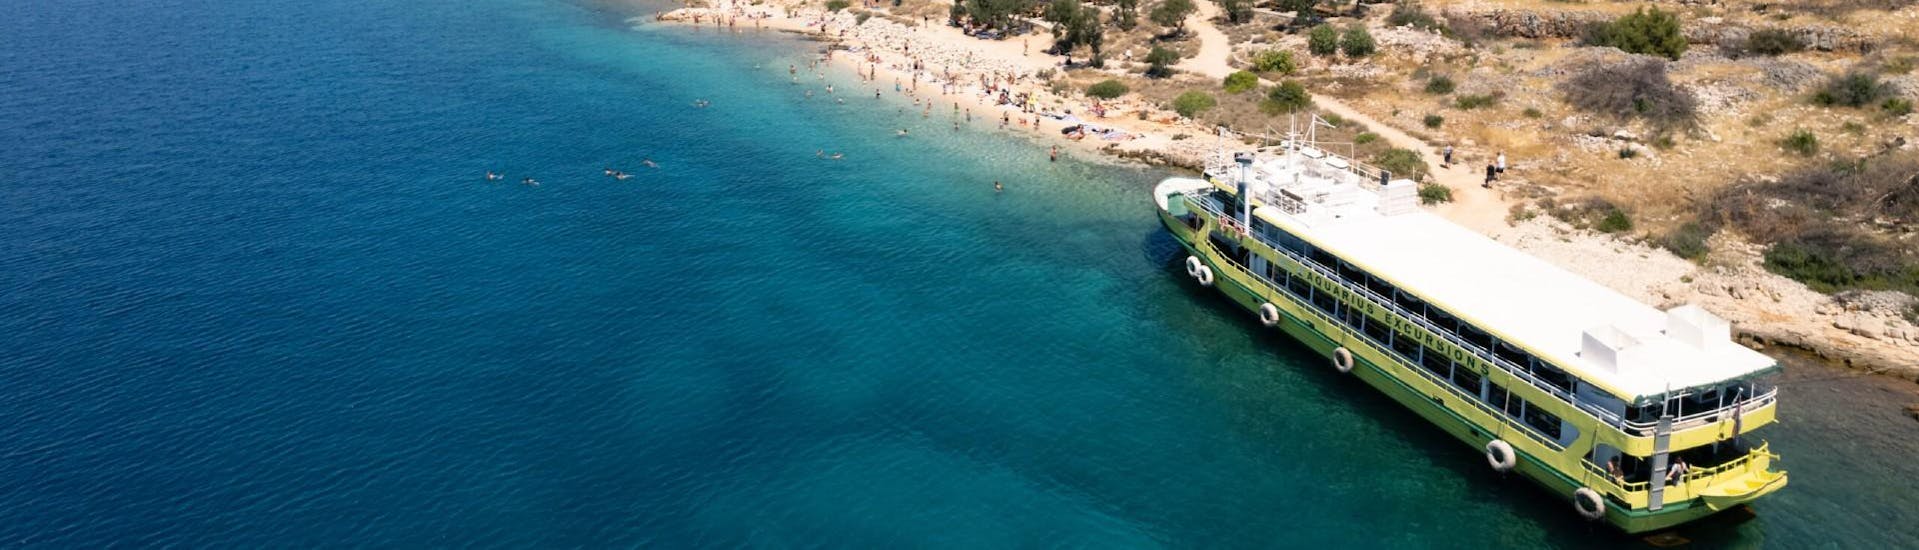 Das Boot von Aquarius Excursions Zadar vor einem wunderschönen Strand während ihrer Bootstour.